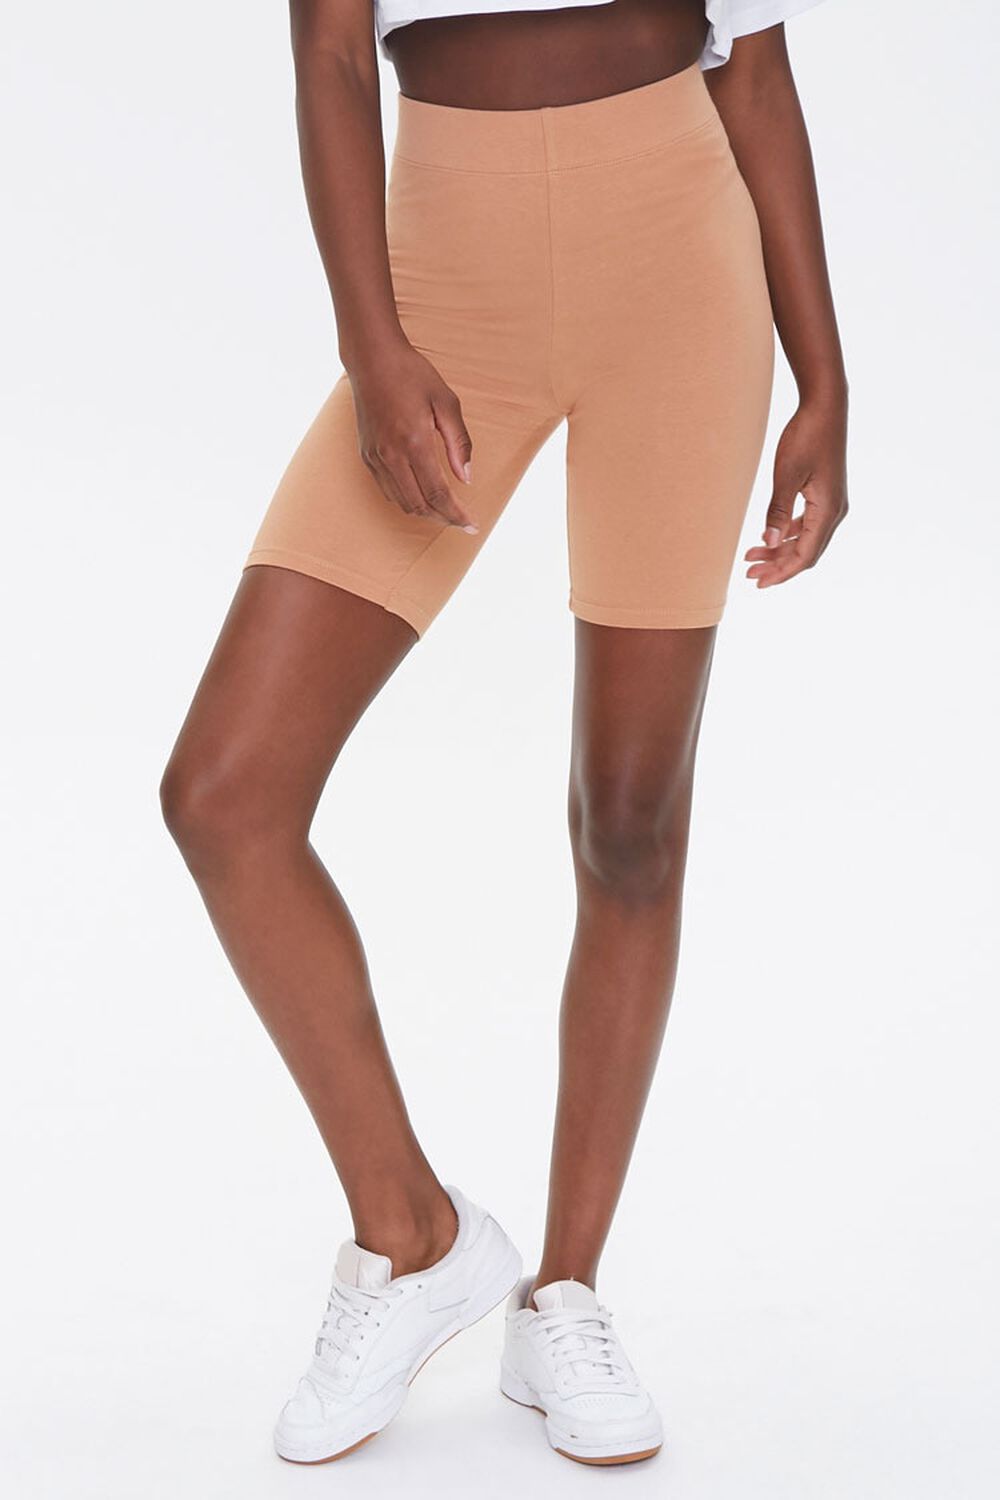 CAMEL Basic Cotton-Blend Biker Shorts, image 2